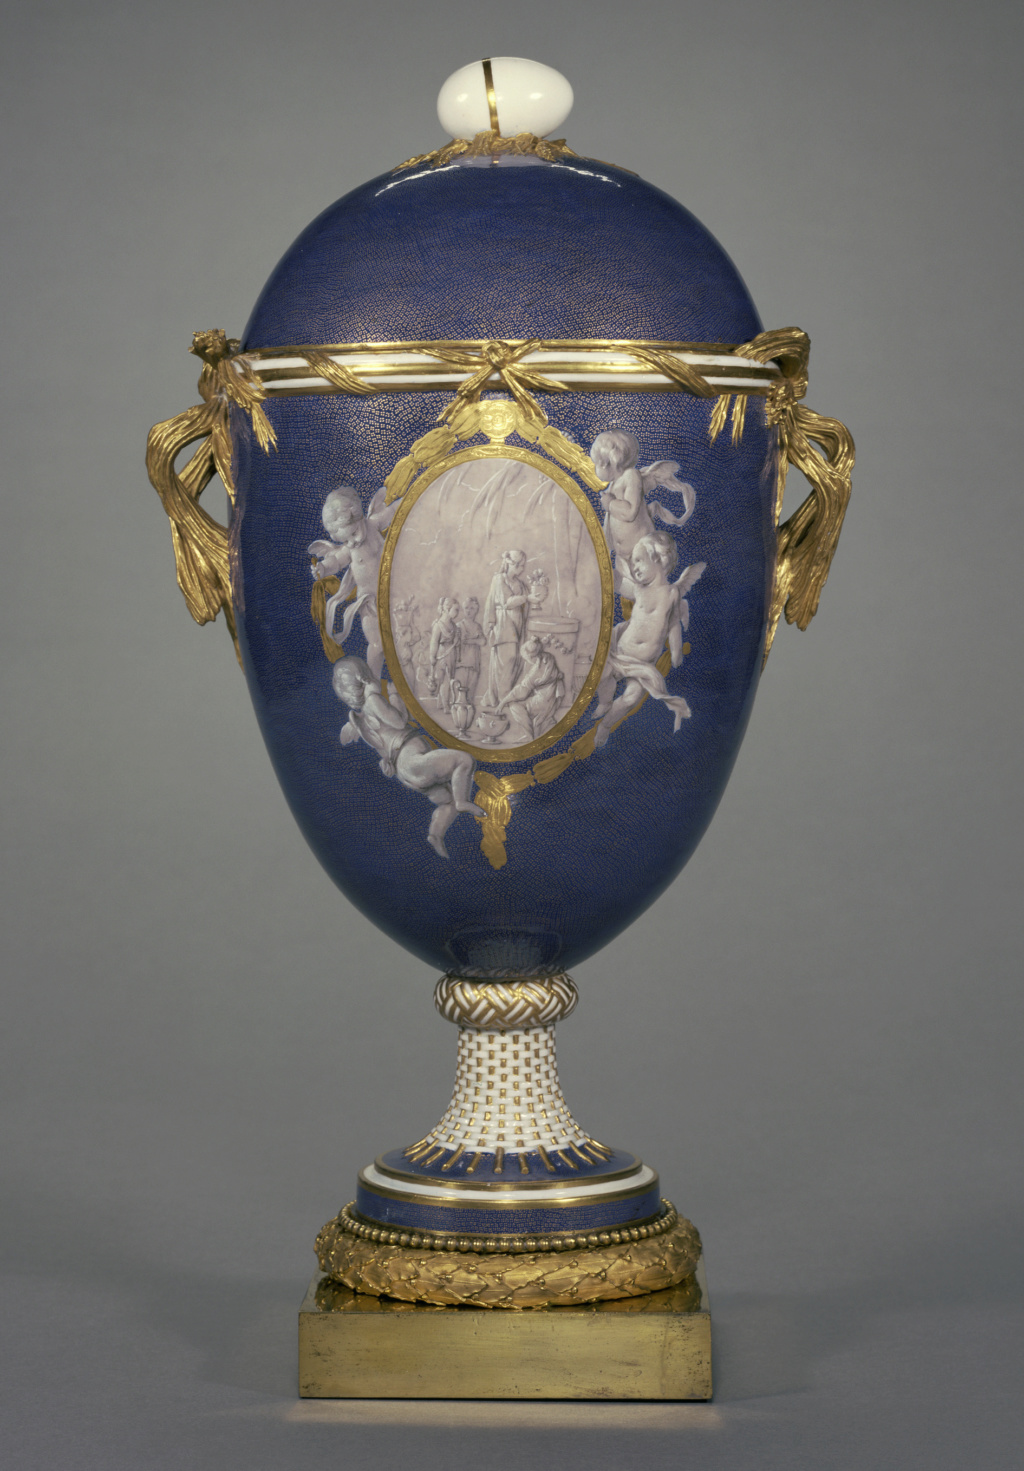 Les vases "oeuf" en porcelaine de Sèvres du XVIIIe siècle 00703010